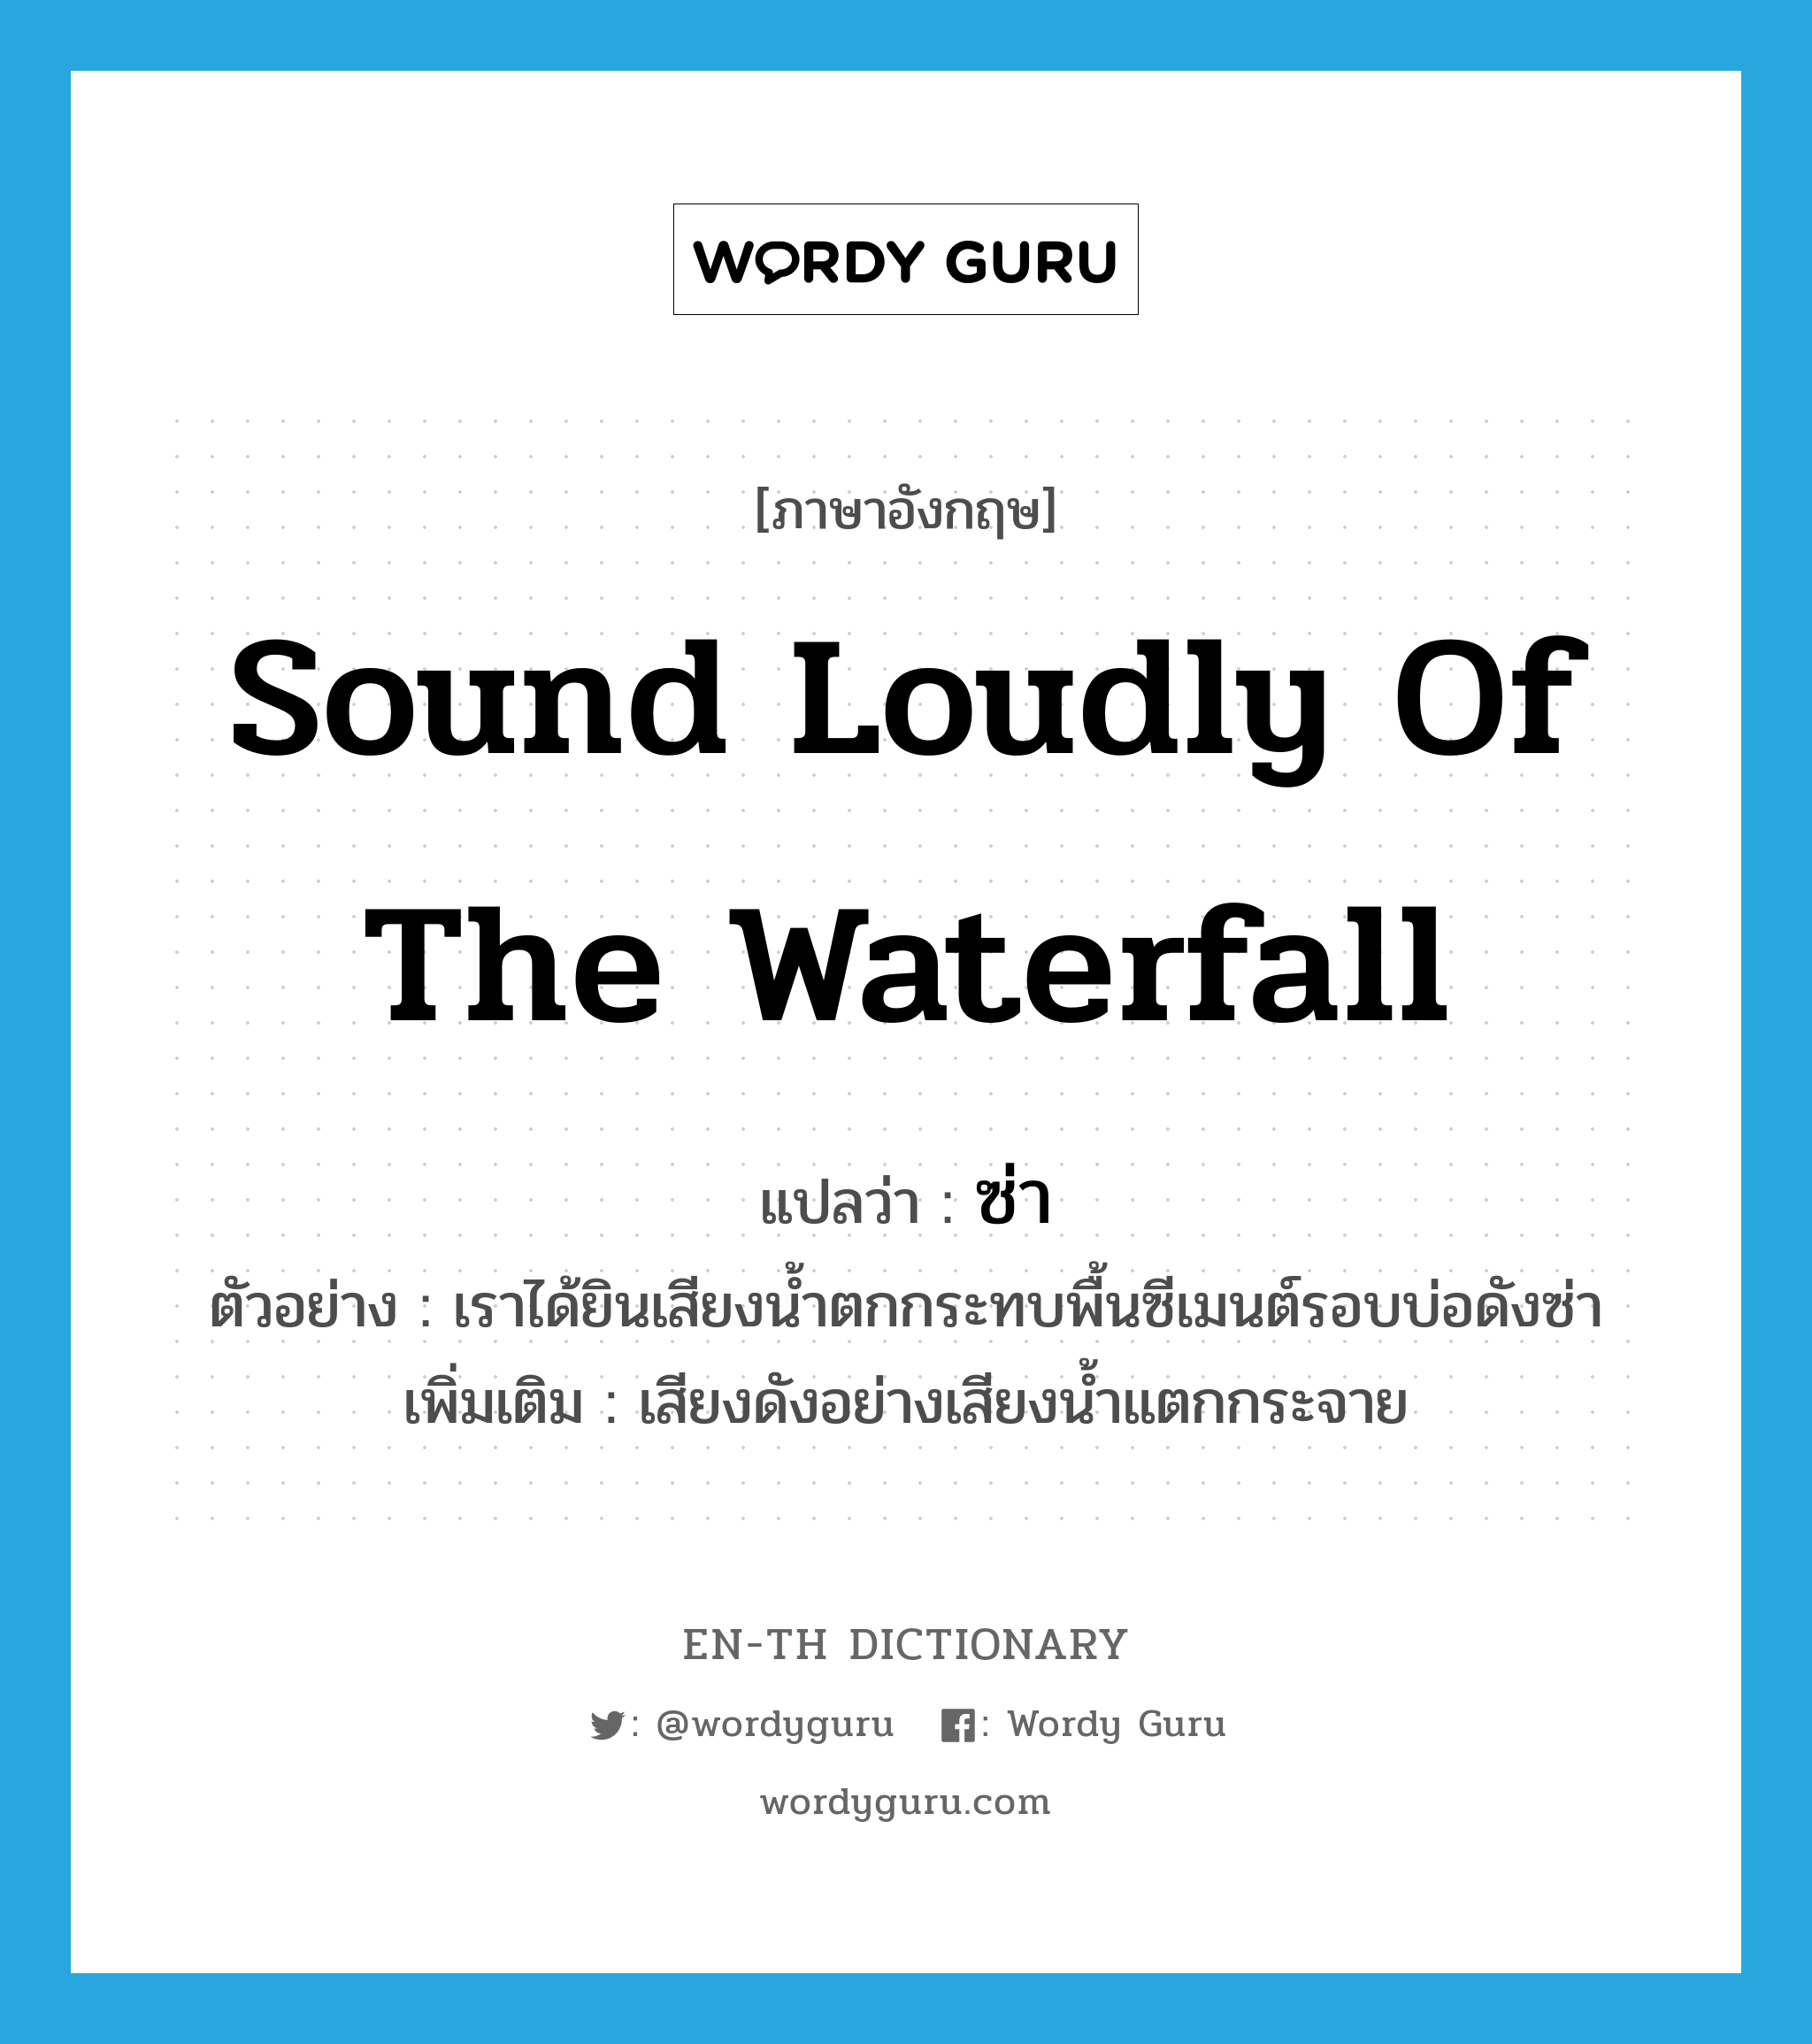 ซ่า ภาษาอังกฤษ?, คำศัพท์ภาษาอังกฤษ ซ่า แปลว่า sound loudly of the waterfall ประเภท ADV ตัวอย่าง เราได้ยินเสียงน้ำตกกระทบพื้นซีเมนต์รอบบ่อดังซ่า เพิ่มเติม เสียงดังอย่างเสียงน้ำแตกกระจาย หมวด ADV